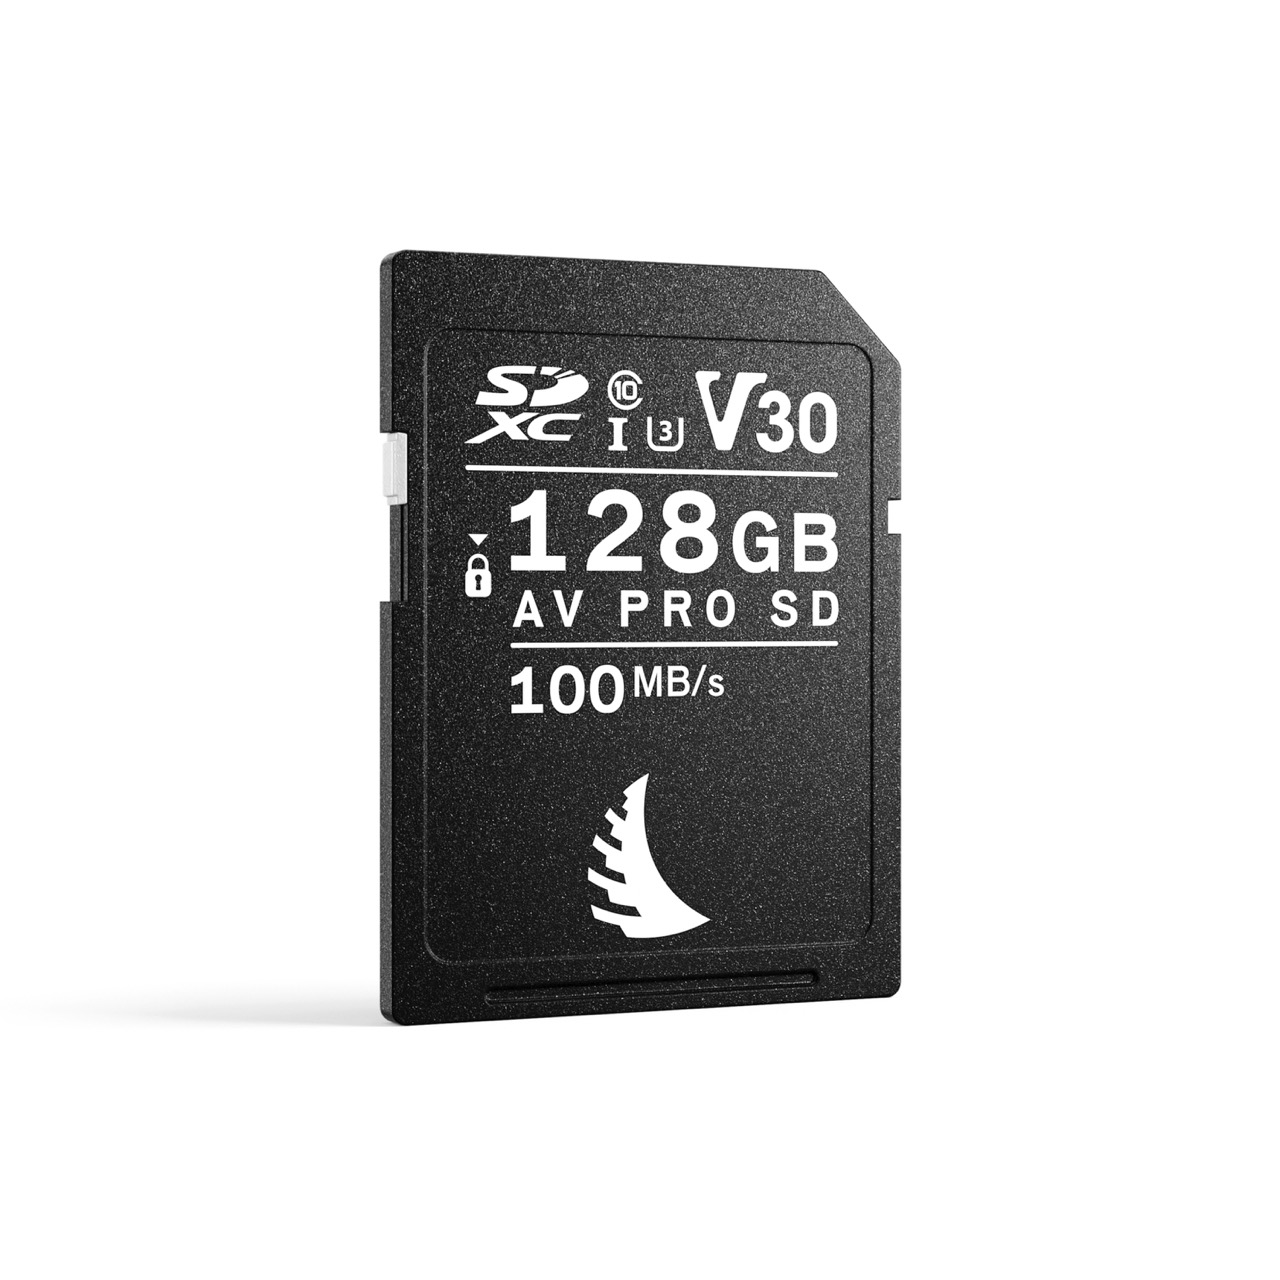 Angelbird AV PRO SD V30 128GB Speicherkarte, Frontalansicht leicht schräg